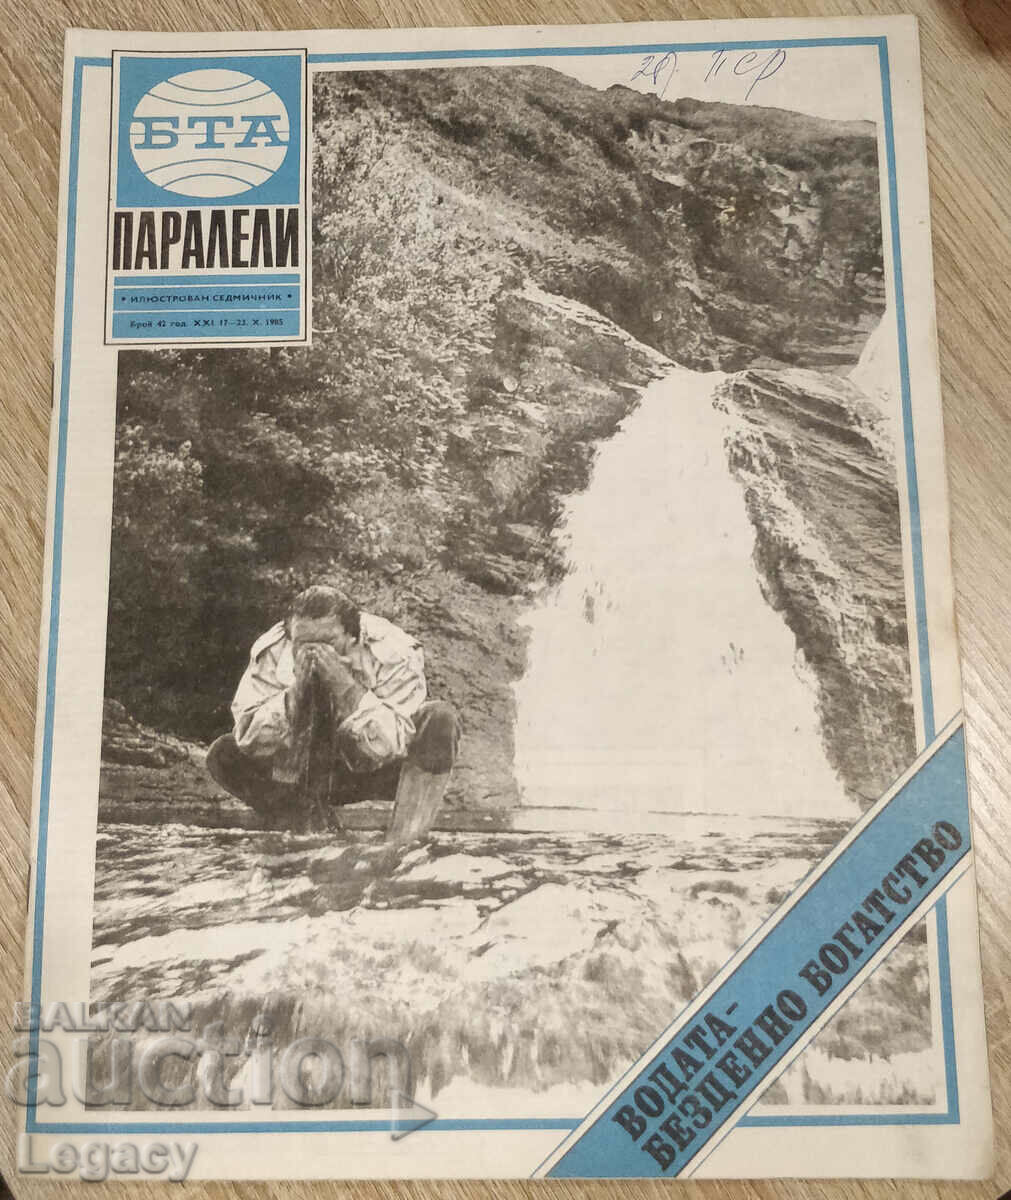 1985 BTA Parallels magazine, issue 42